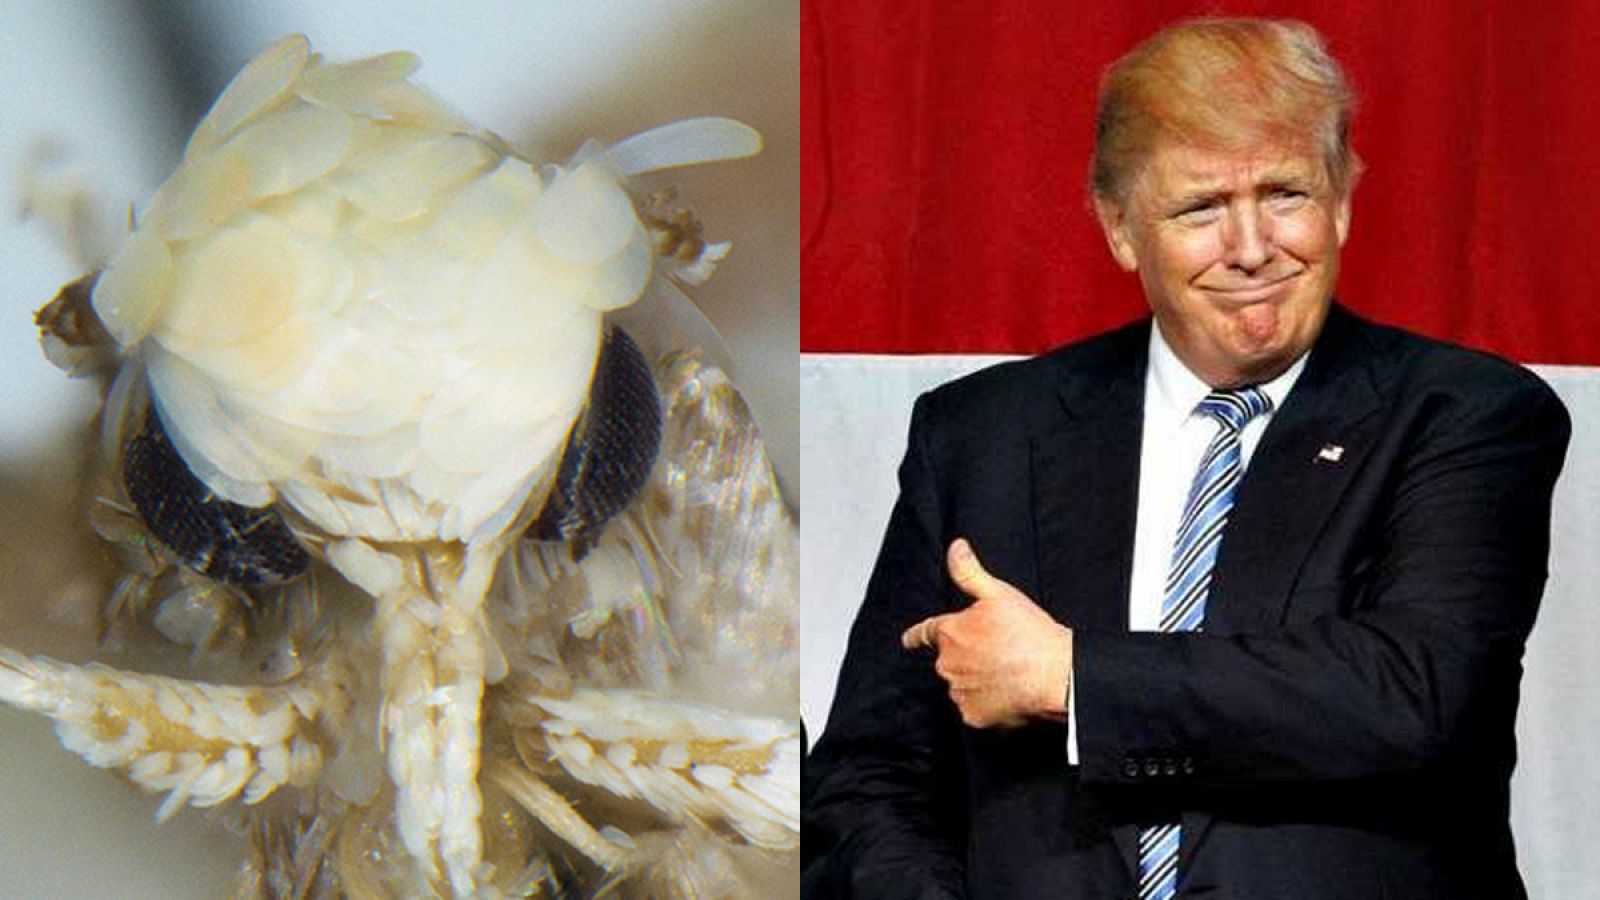 El nombre del insecto ha sido escogido por el parecido de las escamas amarillentas de su cabeza con el peinado del presidente electo de EE.UU.